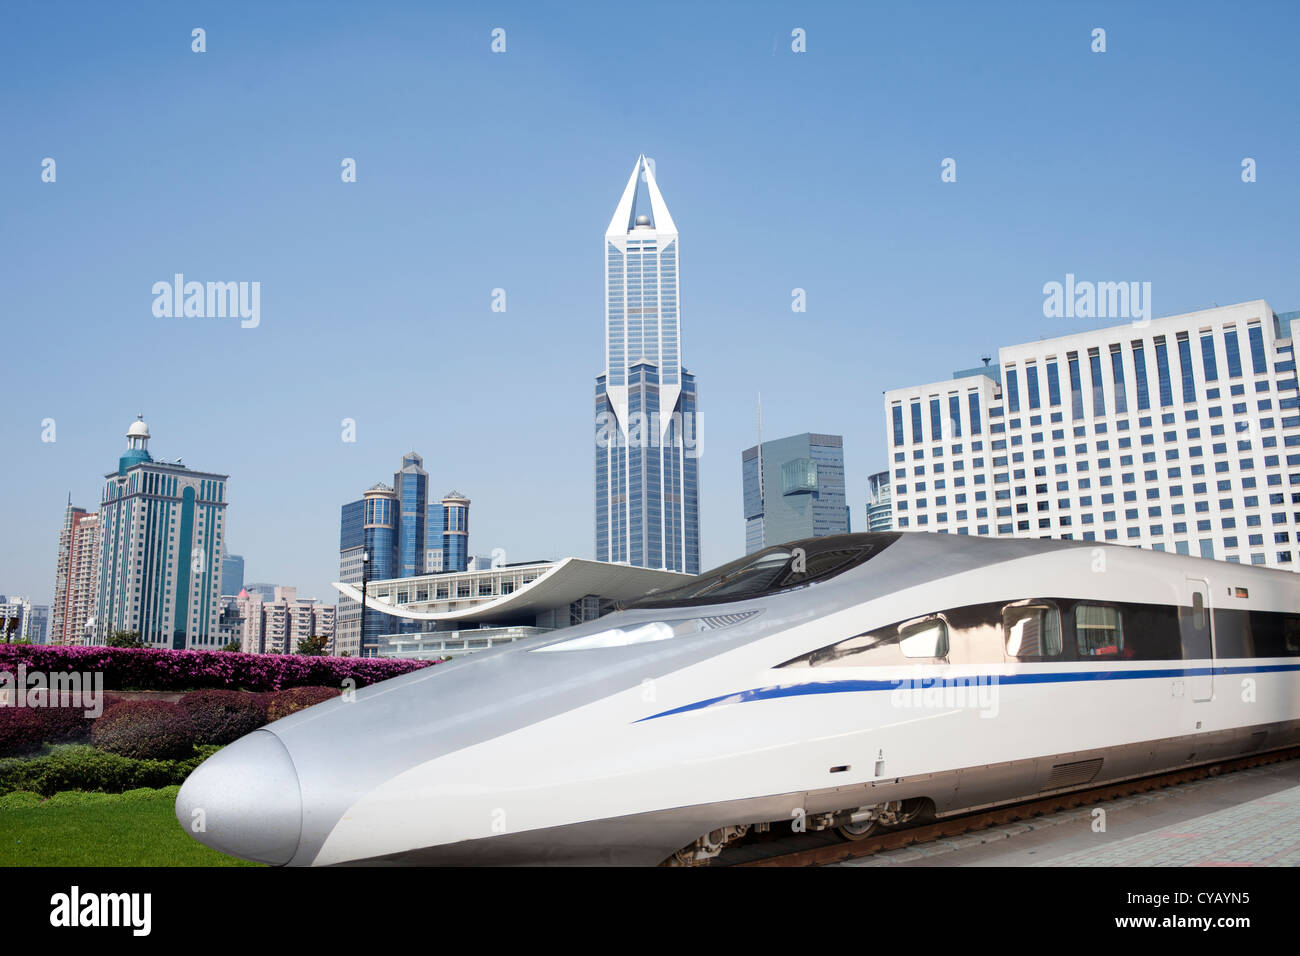 China high speed train,shanghai,China Stock Photo